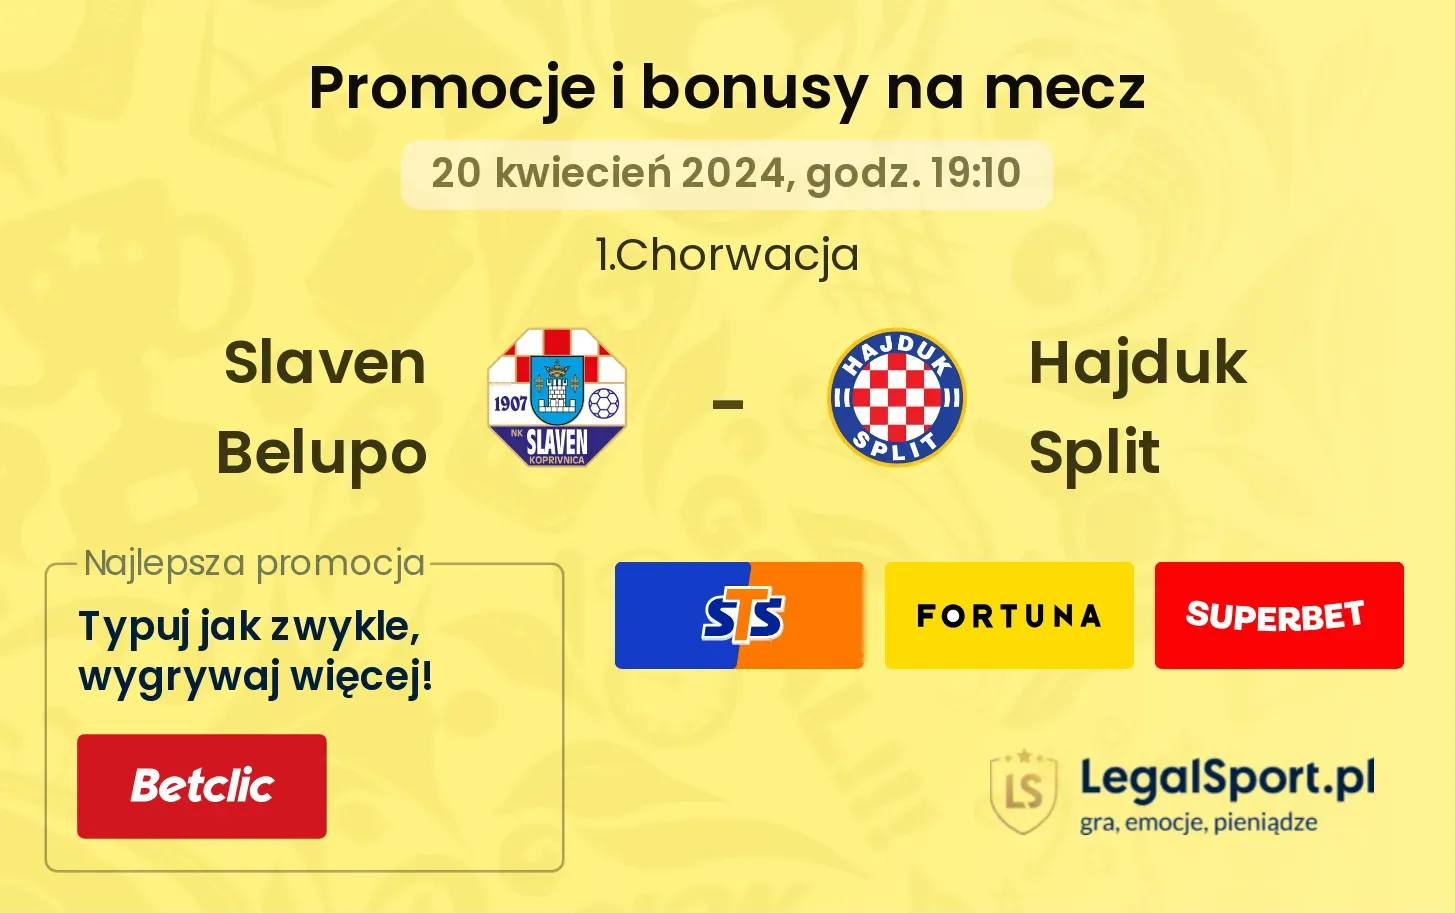 Slaven Belupo - Hajduk Split promocje bonusy na mecz